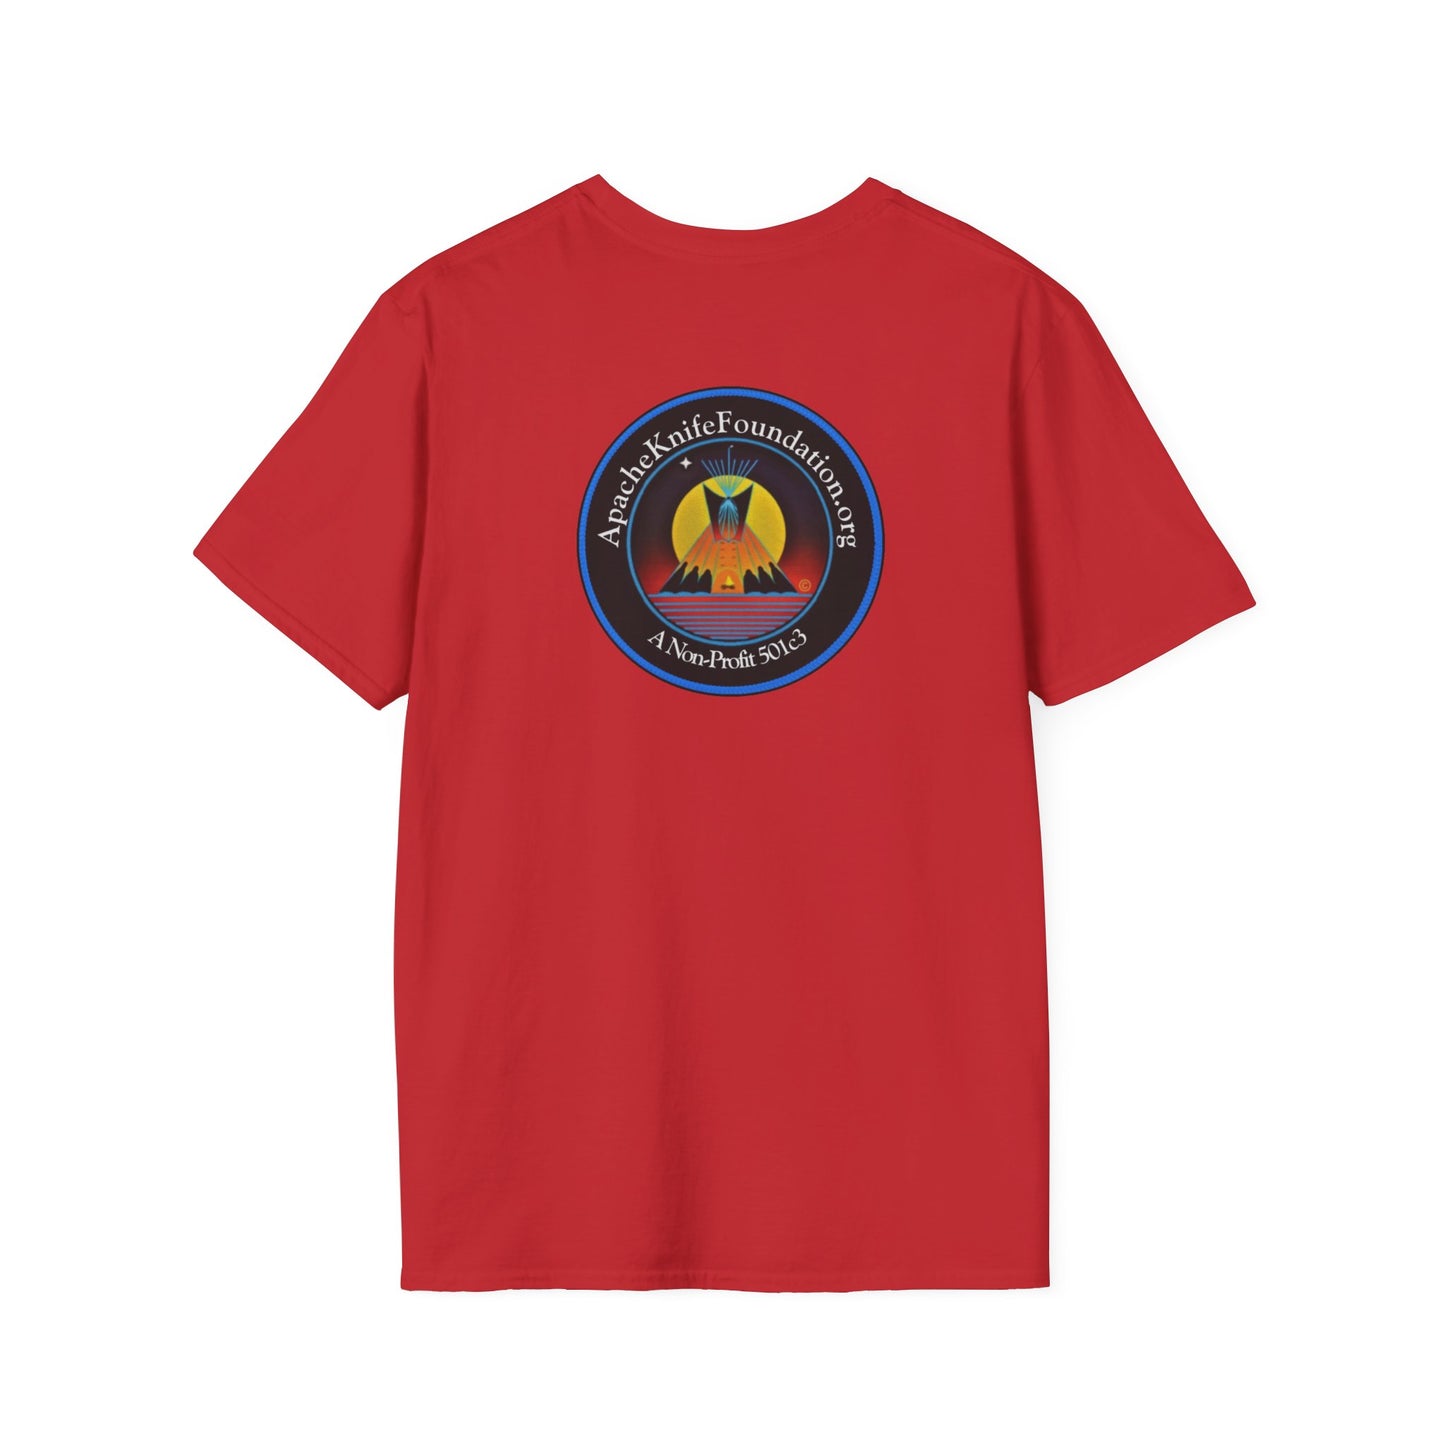 Koszula Apache Knife Foundation Non-Profit (przód/tył) Bawełna Indianie (zamówienie specjalne)